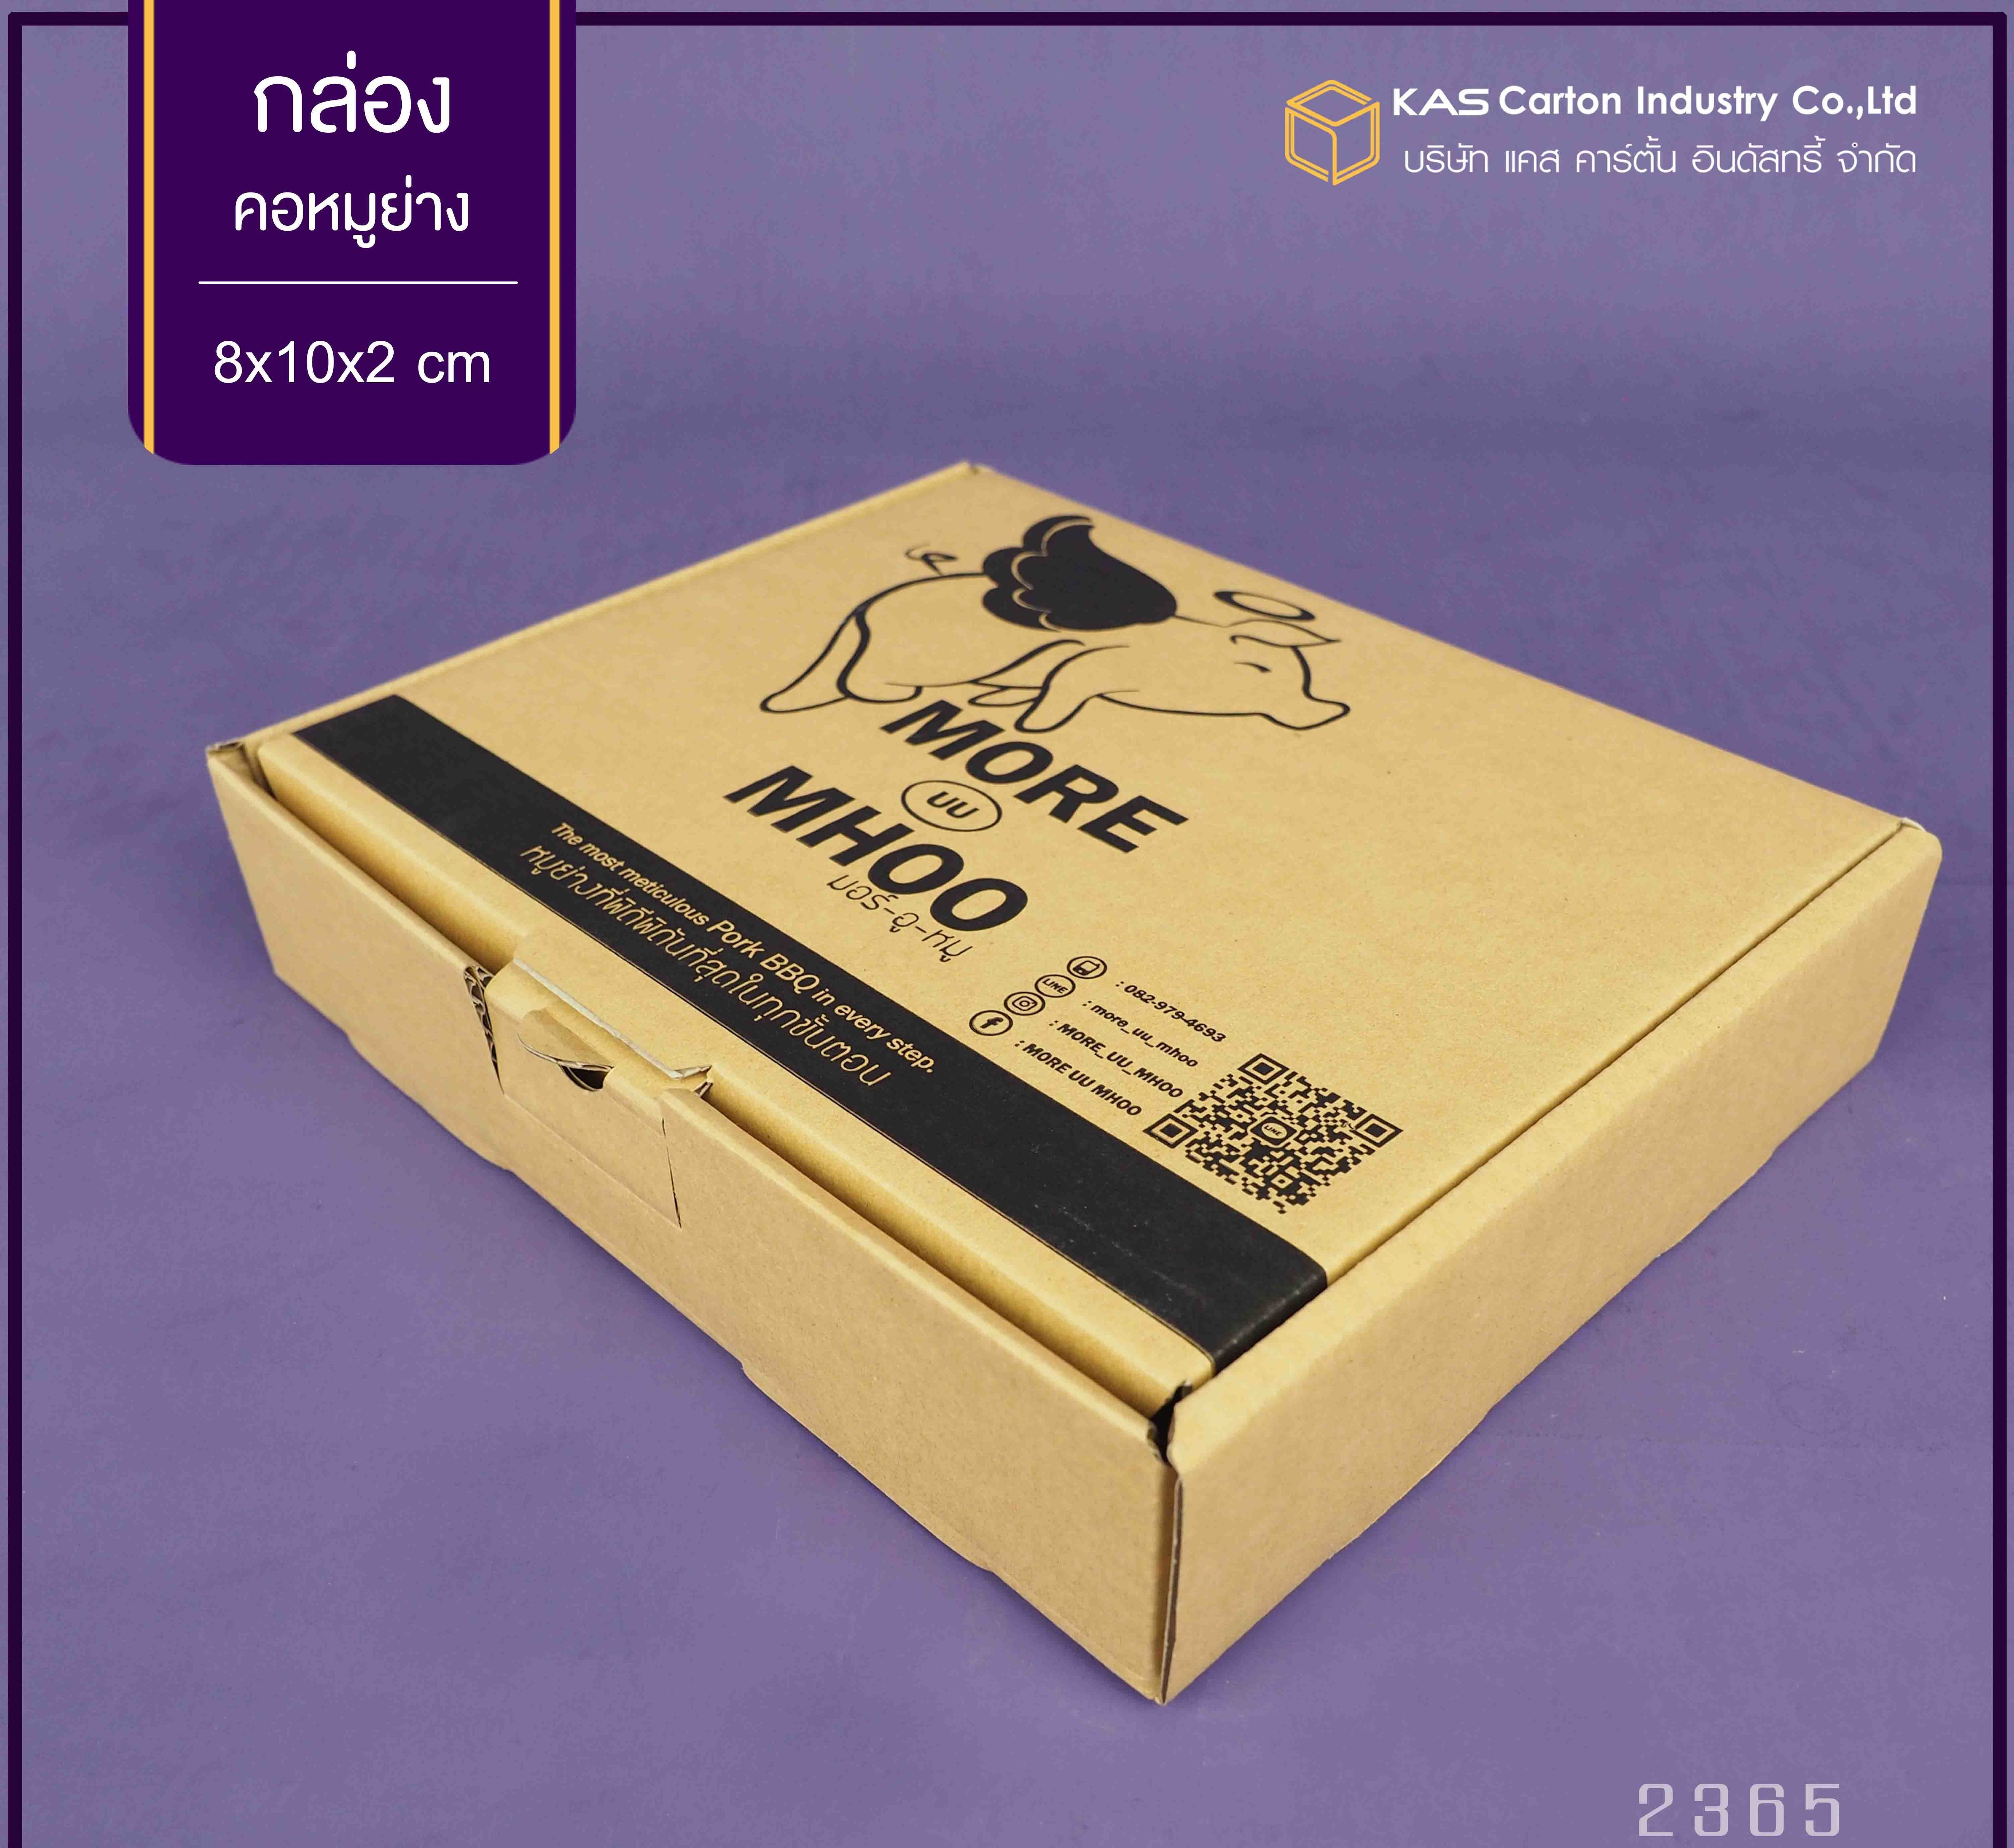 กล่องลูกฟูก สำเร็จรูป และ สั่งผลิต ตามความต้องการลูกค้า กล่องลูกฟูก SME กล่องกระดาษลูกฟูก กล่องอาหาร ชุดคอหมูย่าง Brand More uu Moo